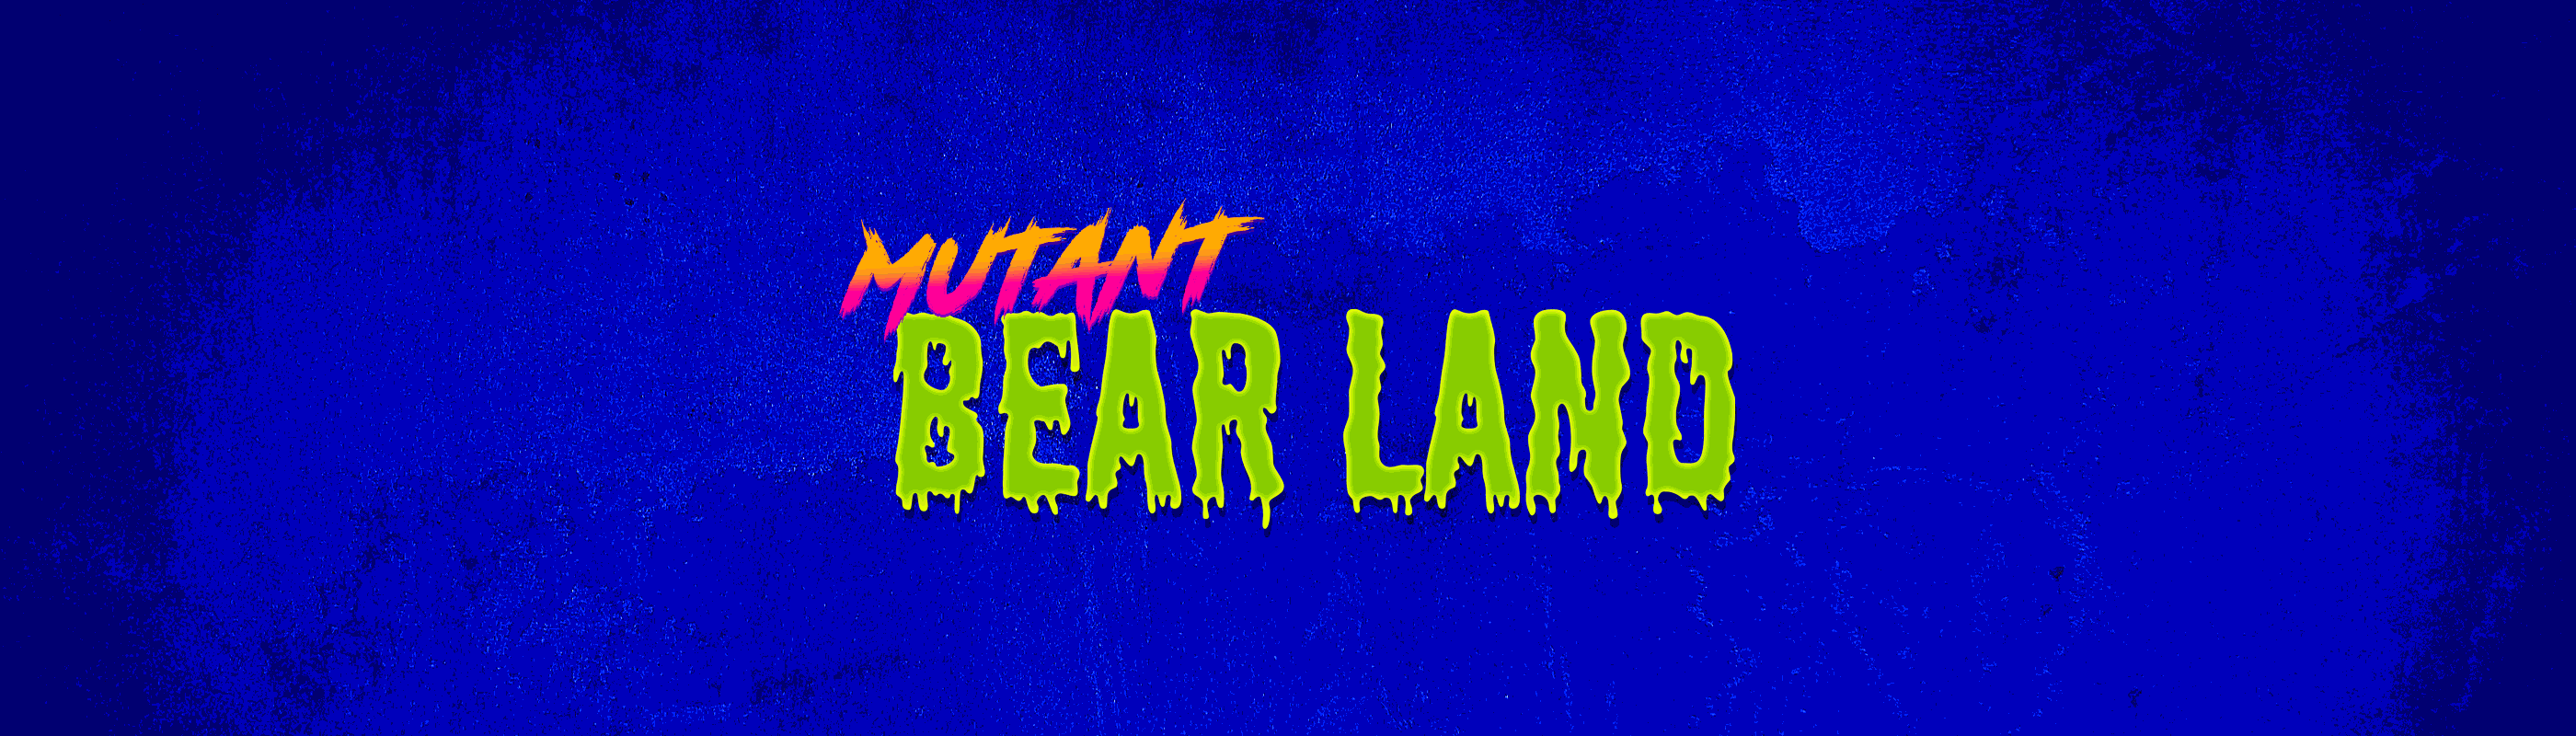 Mutant Bear Land